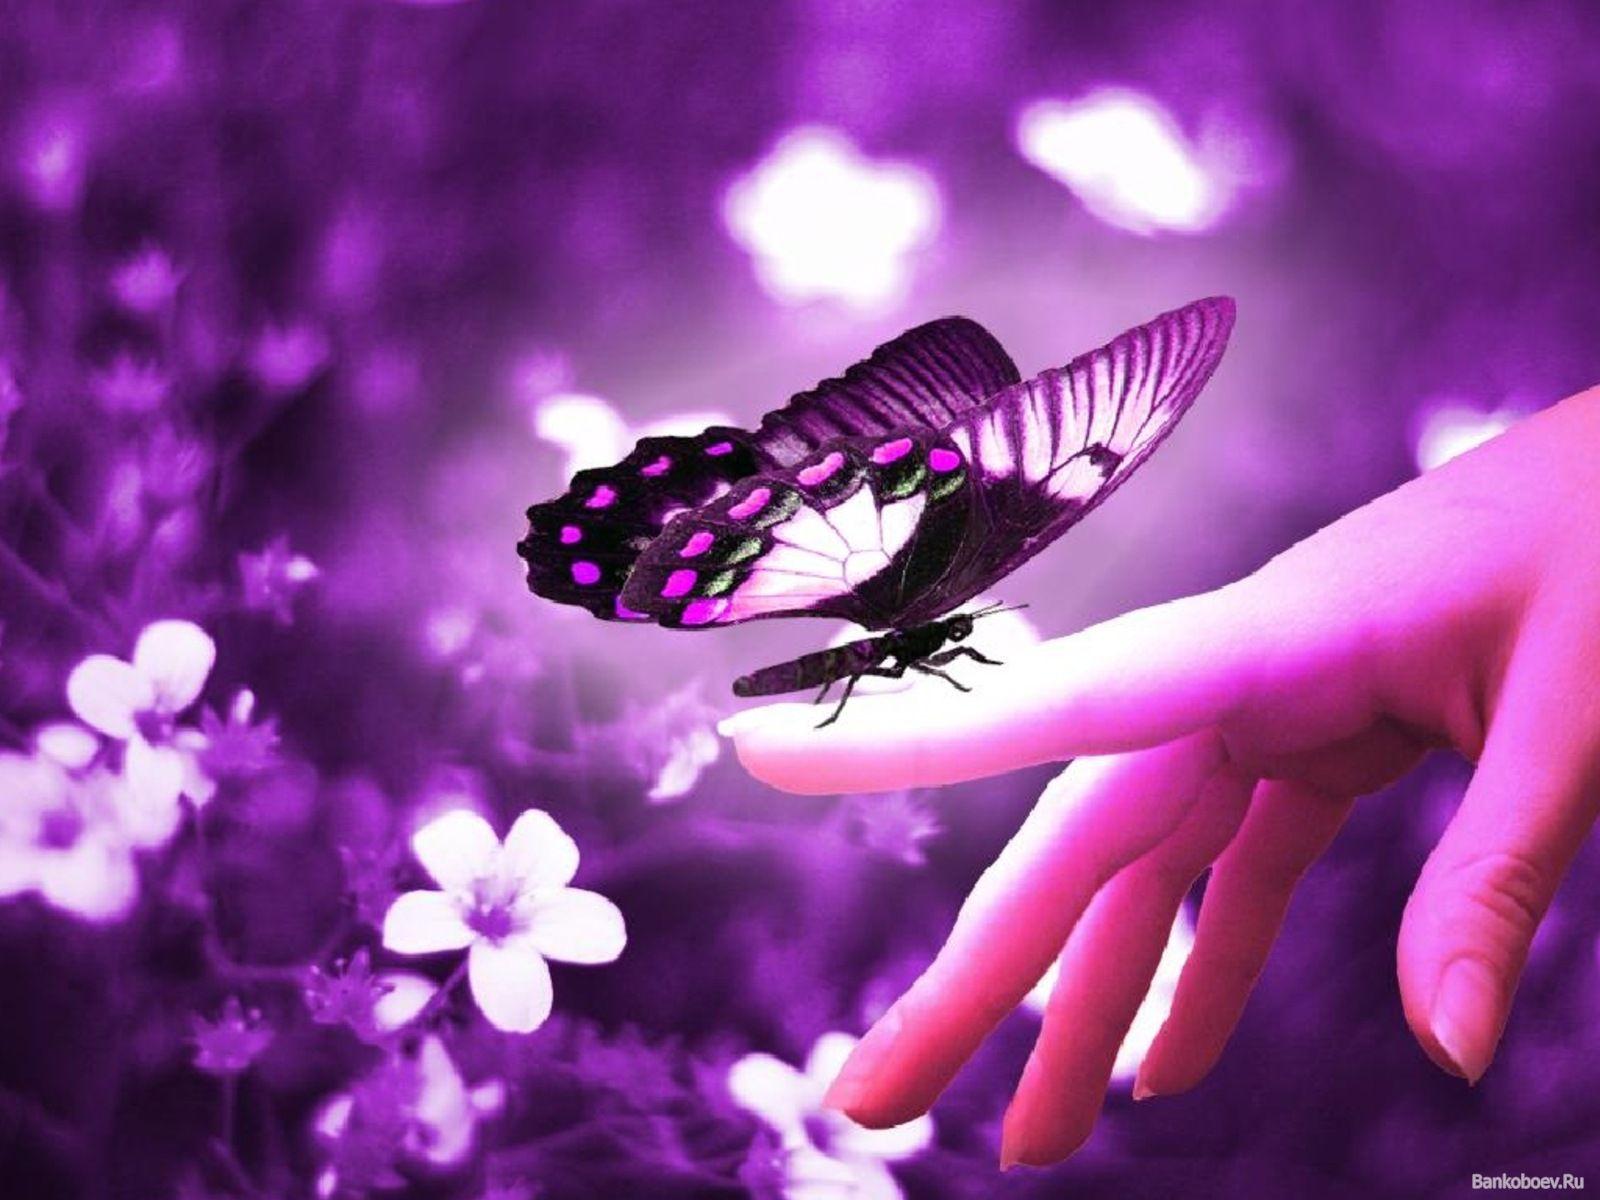 Cute Purple Background. Cute Butterfly in Purple. Background